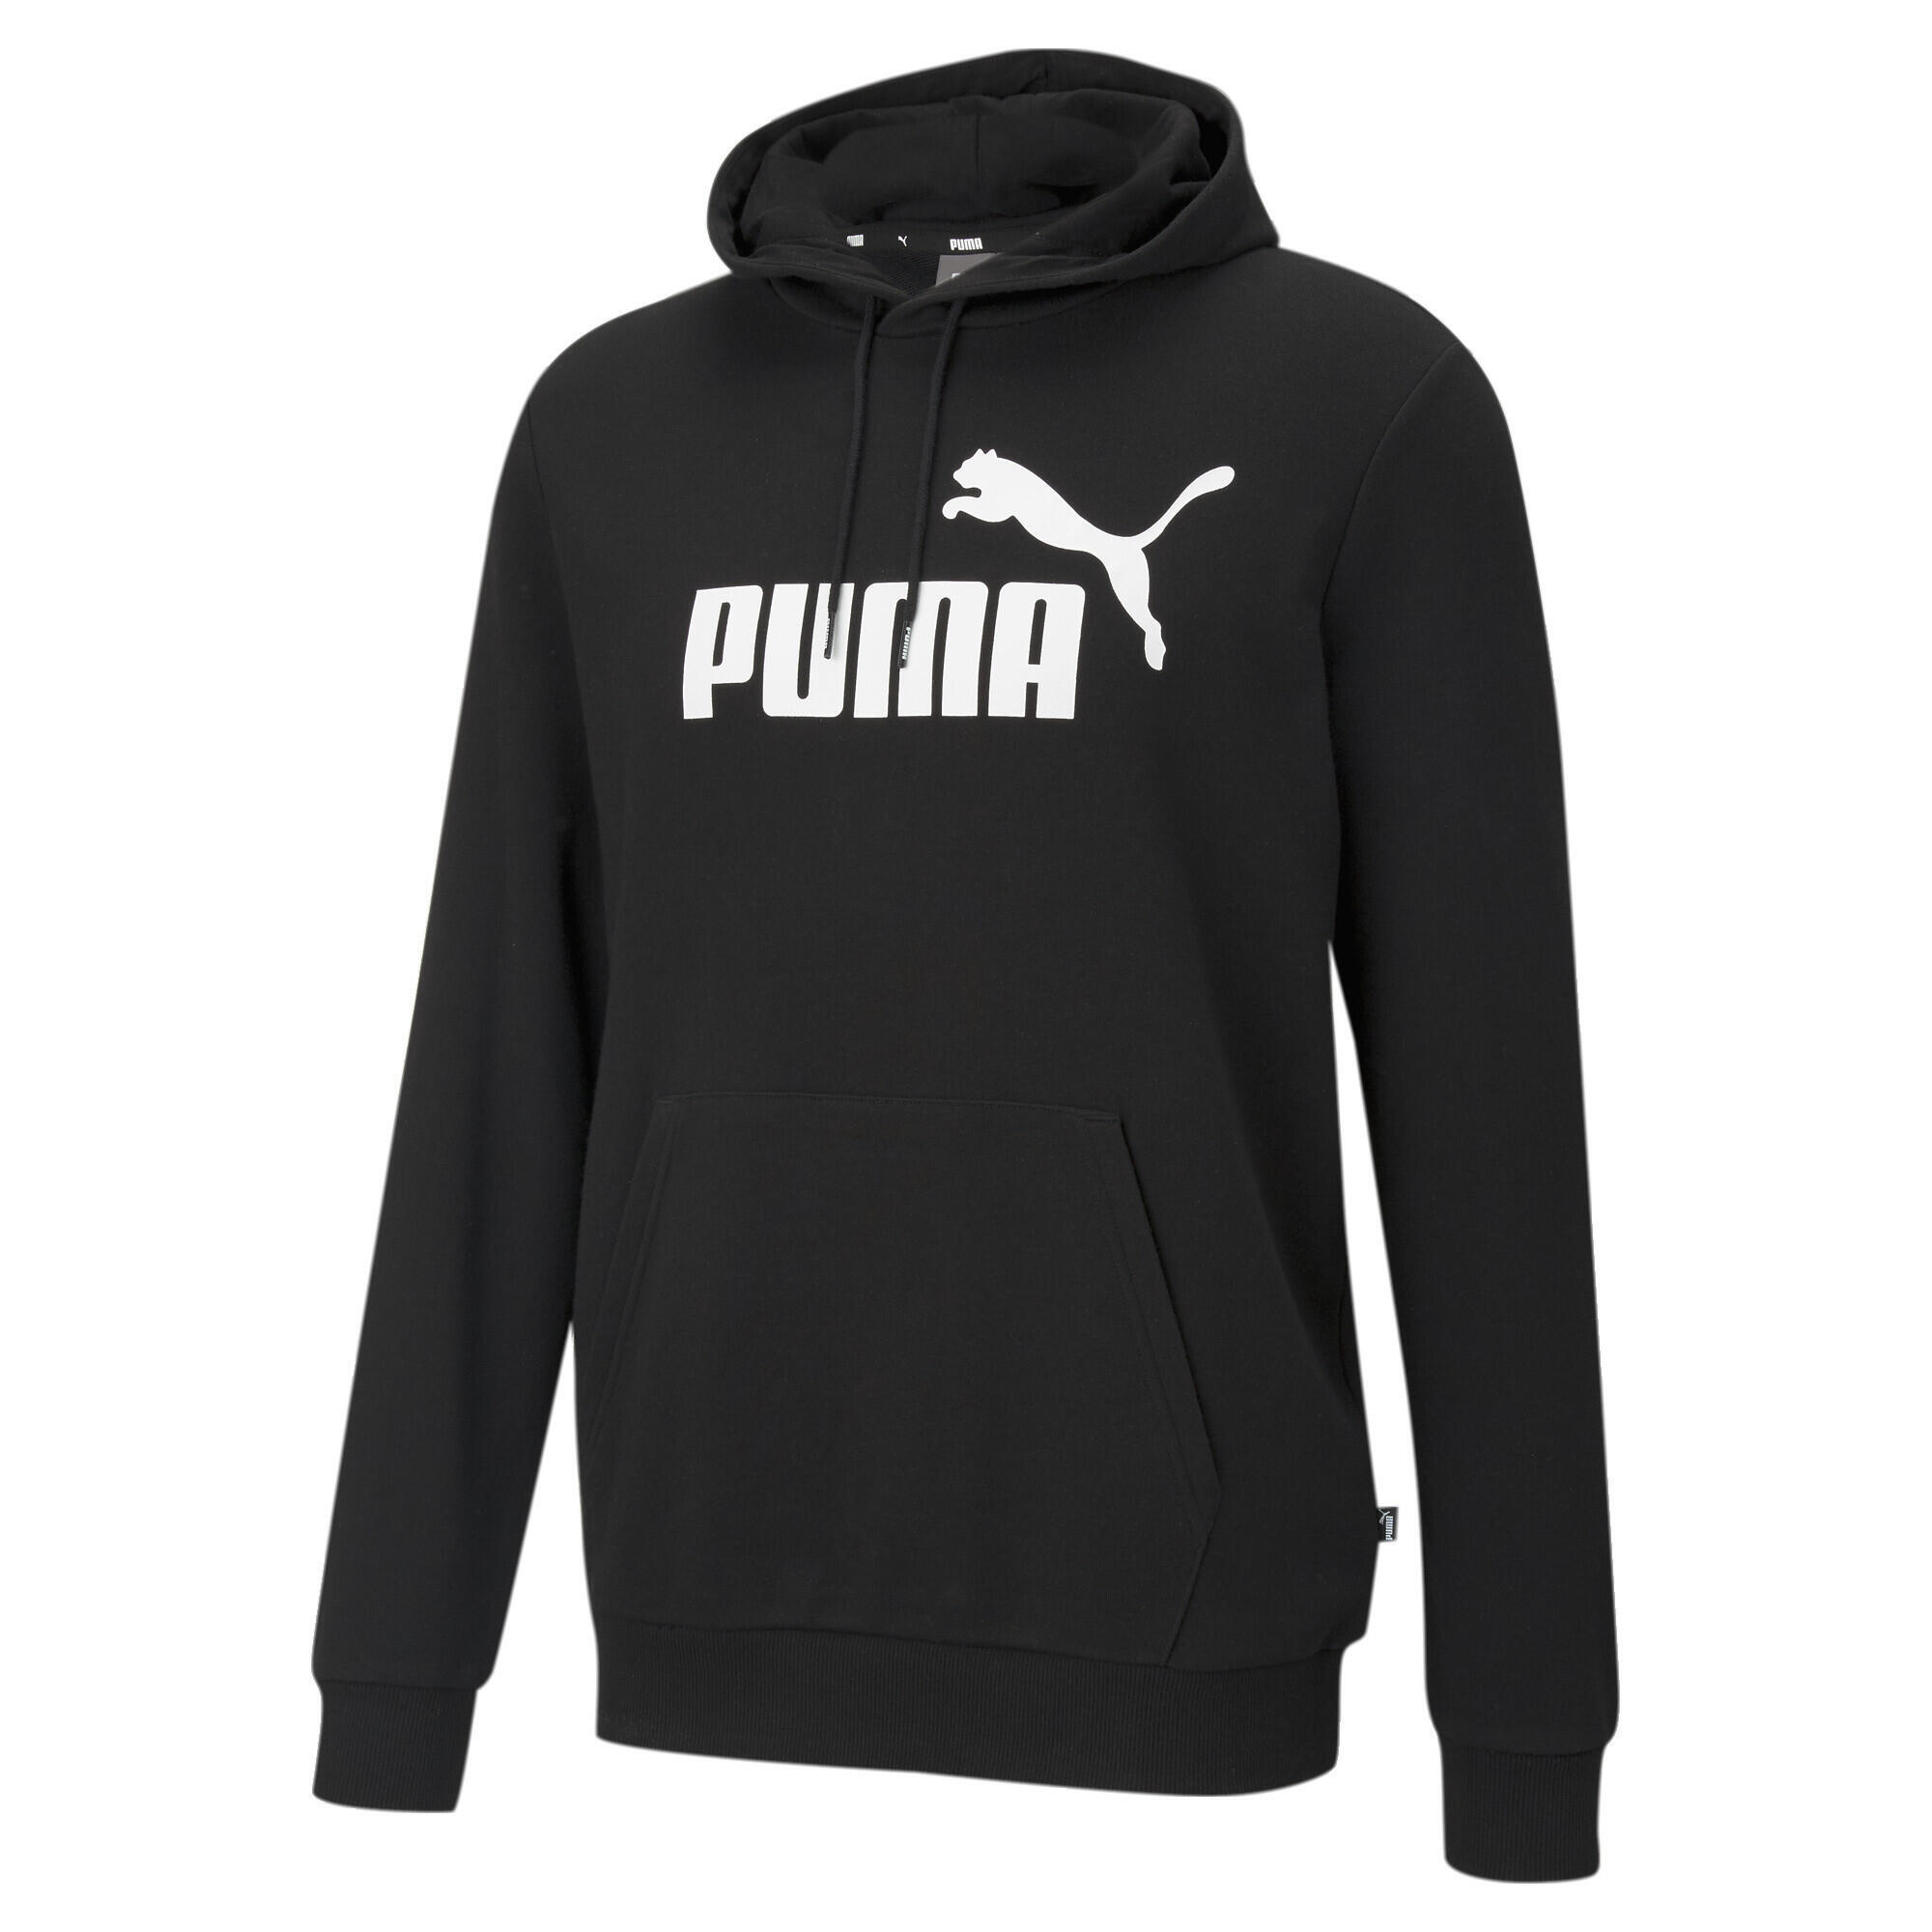 Мужская худи Essentials с большим логотипом PUMA, серый черный